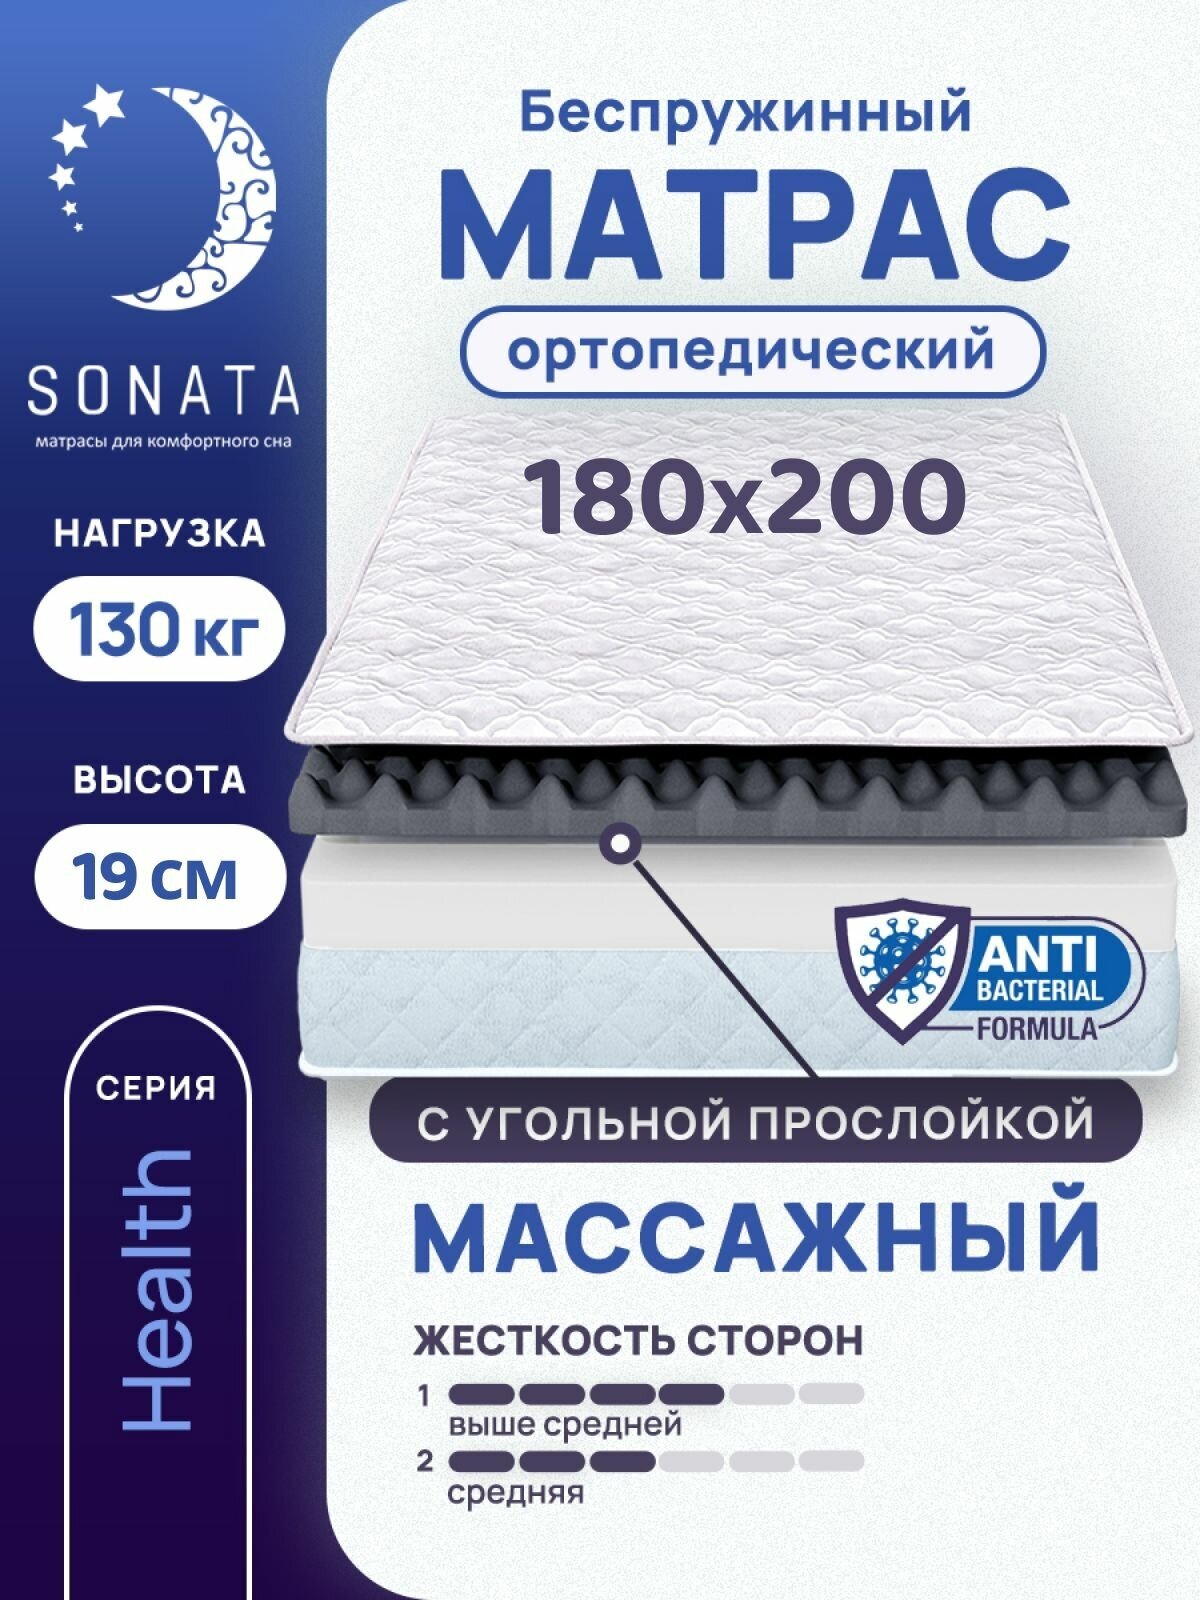 Матрас 180х200 см SONATA ортопедический беспружинный двуспальный матрац для кровати высота 19 см с массажным эффектом